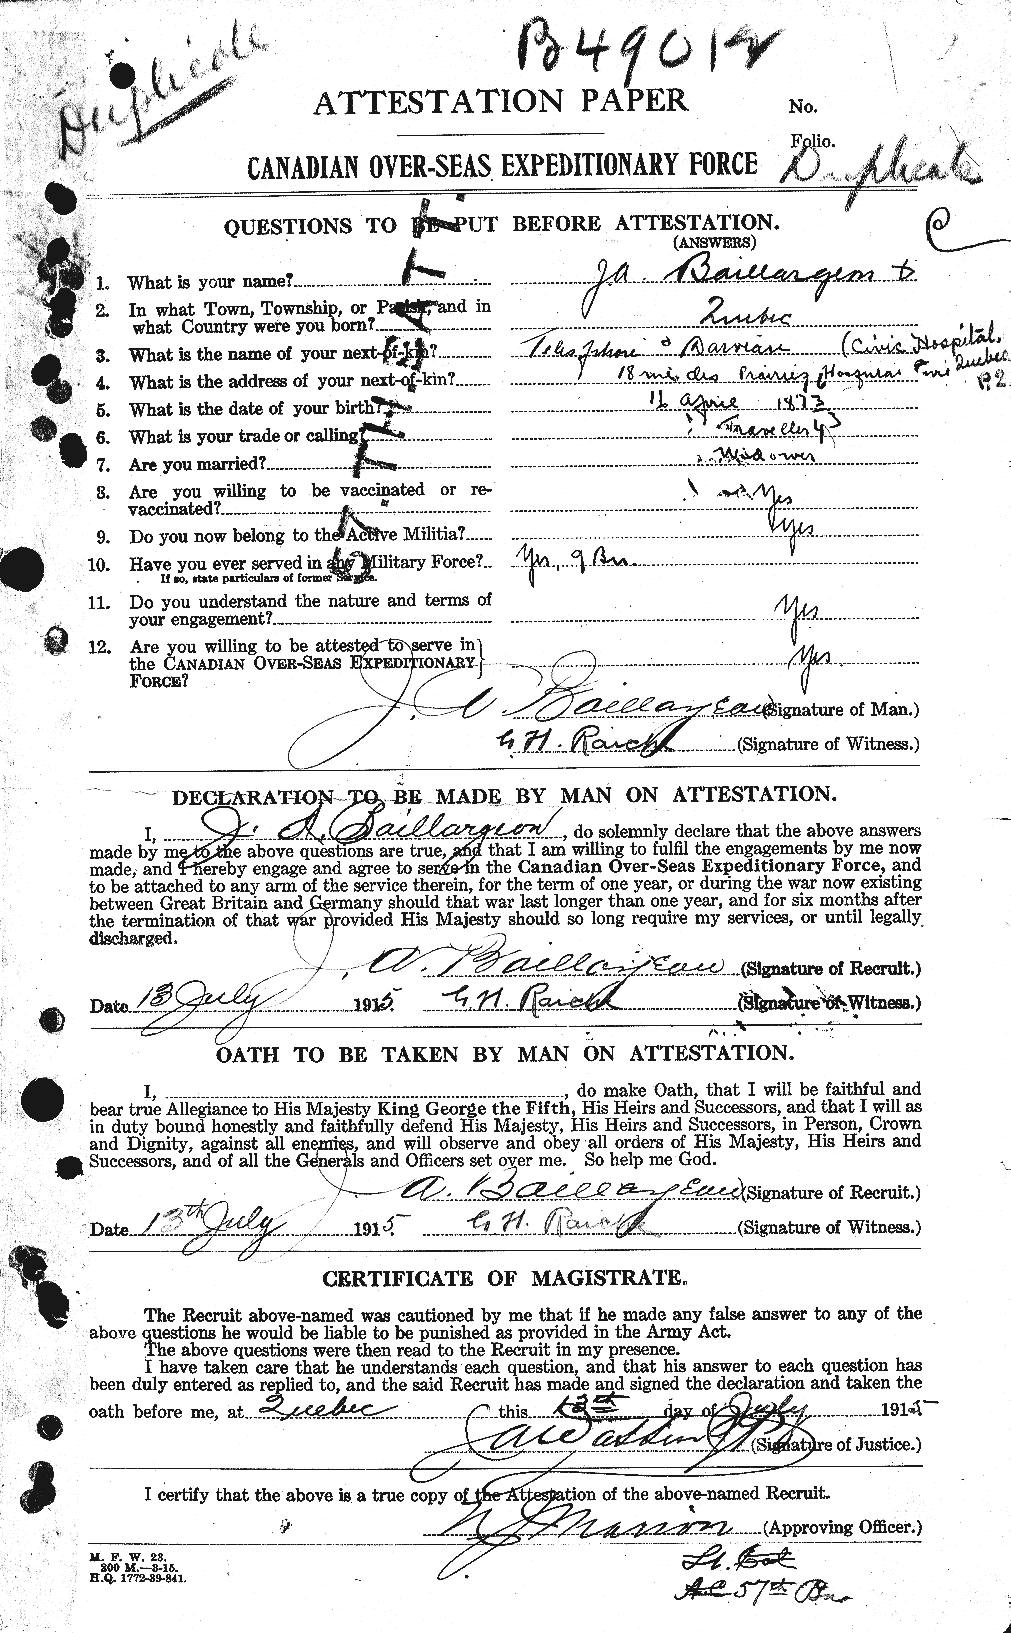 Dossiers du Personnel de la Première Guerre mondiale - CEC 226300a